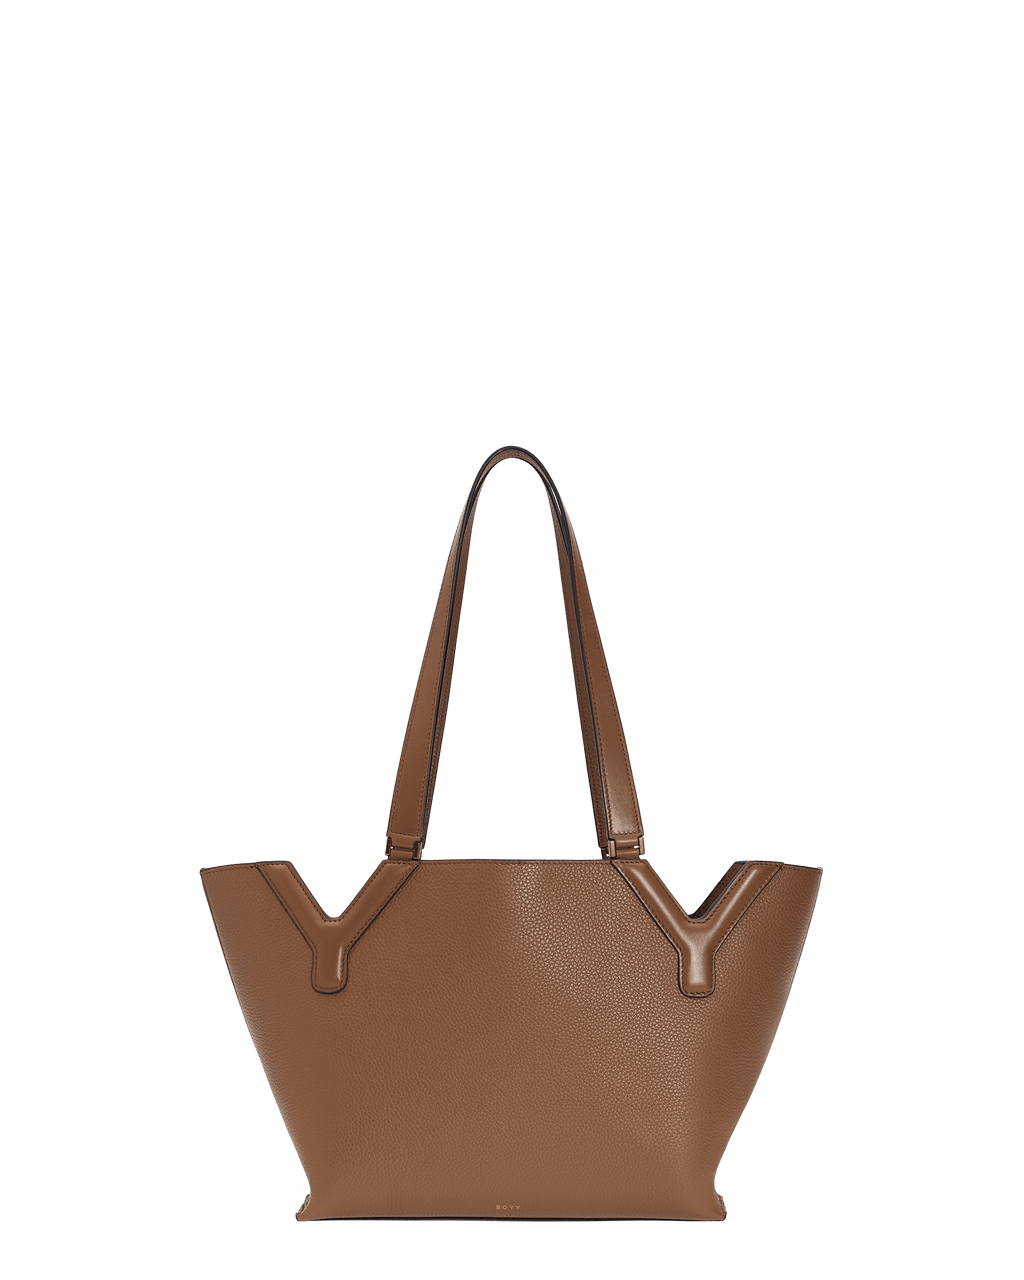 Nine West Faux Patent Leather Handbag Red Large Shoulder Bag Satchel Big  Purse